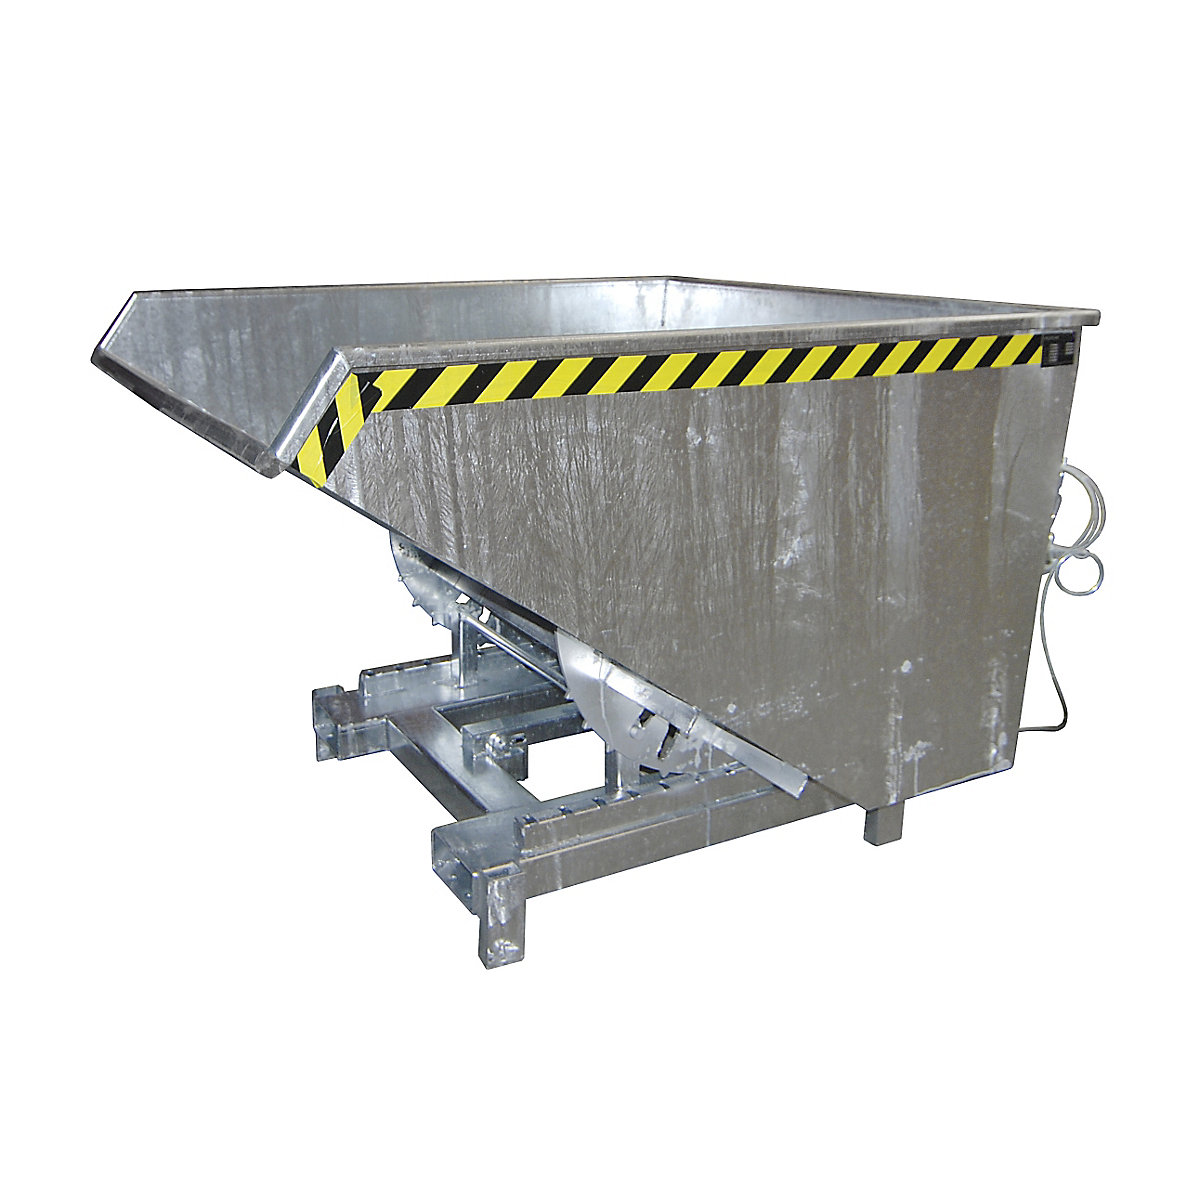 Recipiente basculante para cargas pesadas – eurokraft pro, volume 1,7 m³, capacidade de carga 4000 kg, galvanizado a fogo conforme EN ISO 1461-8